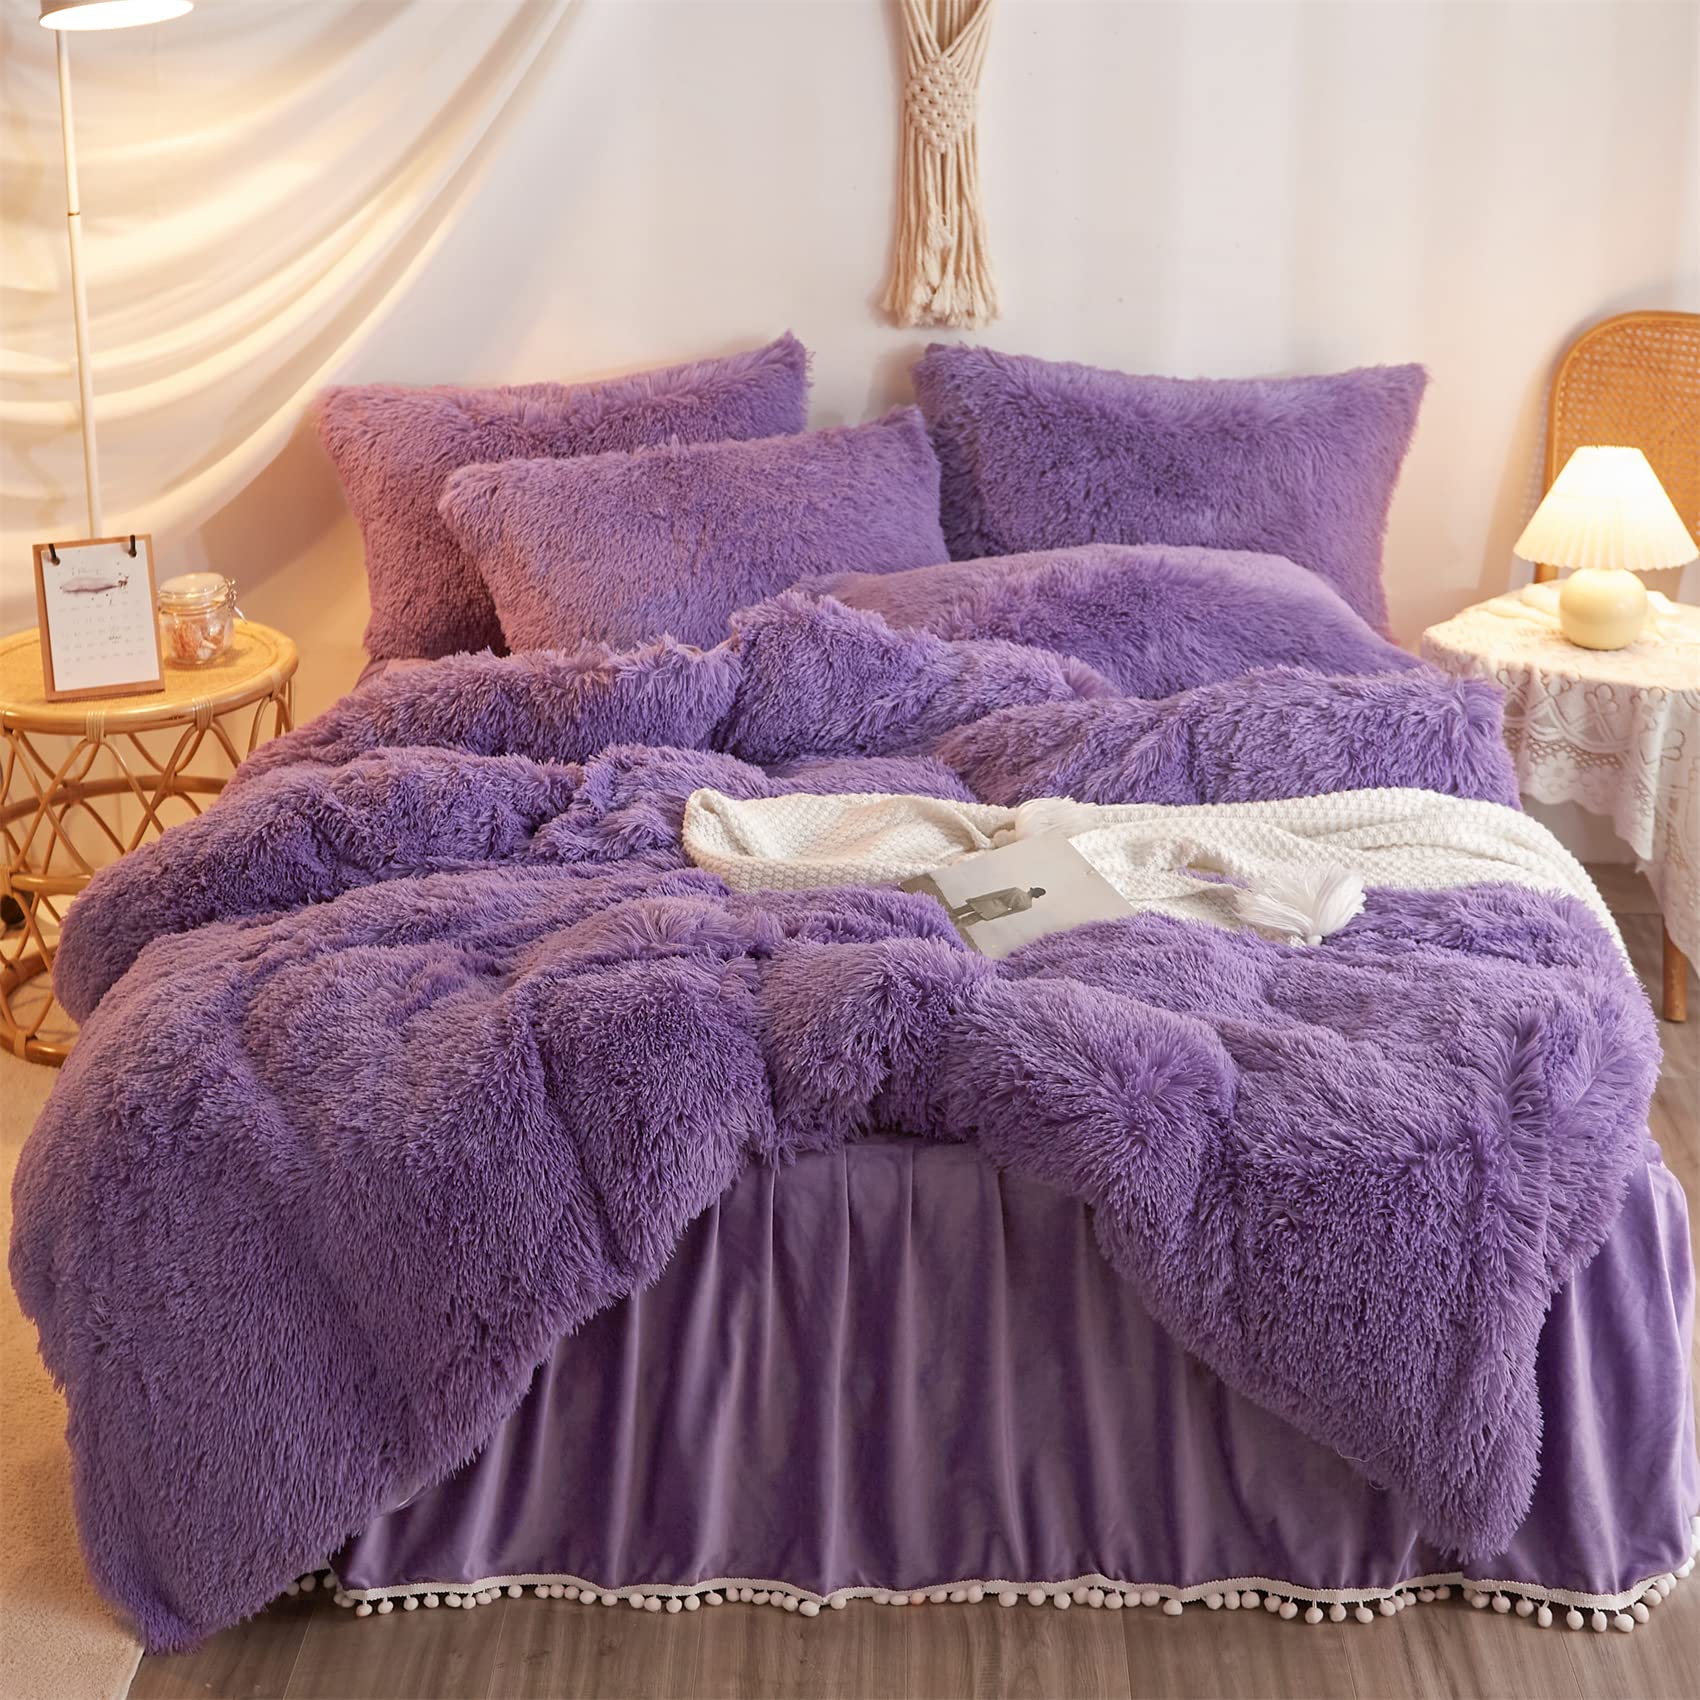 purple bed comforter set